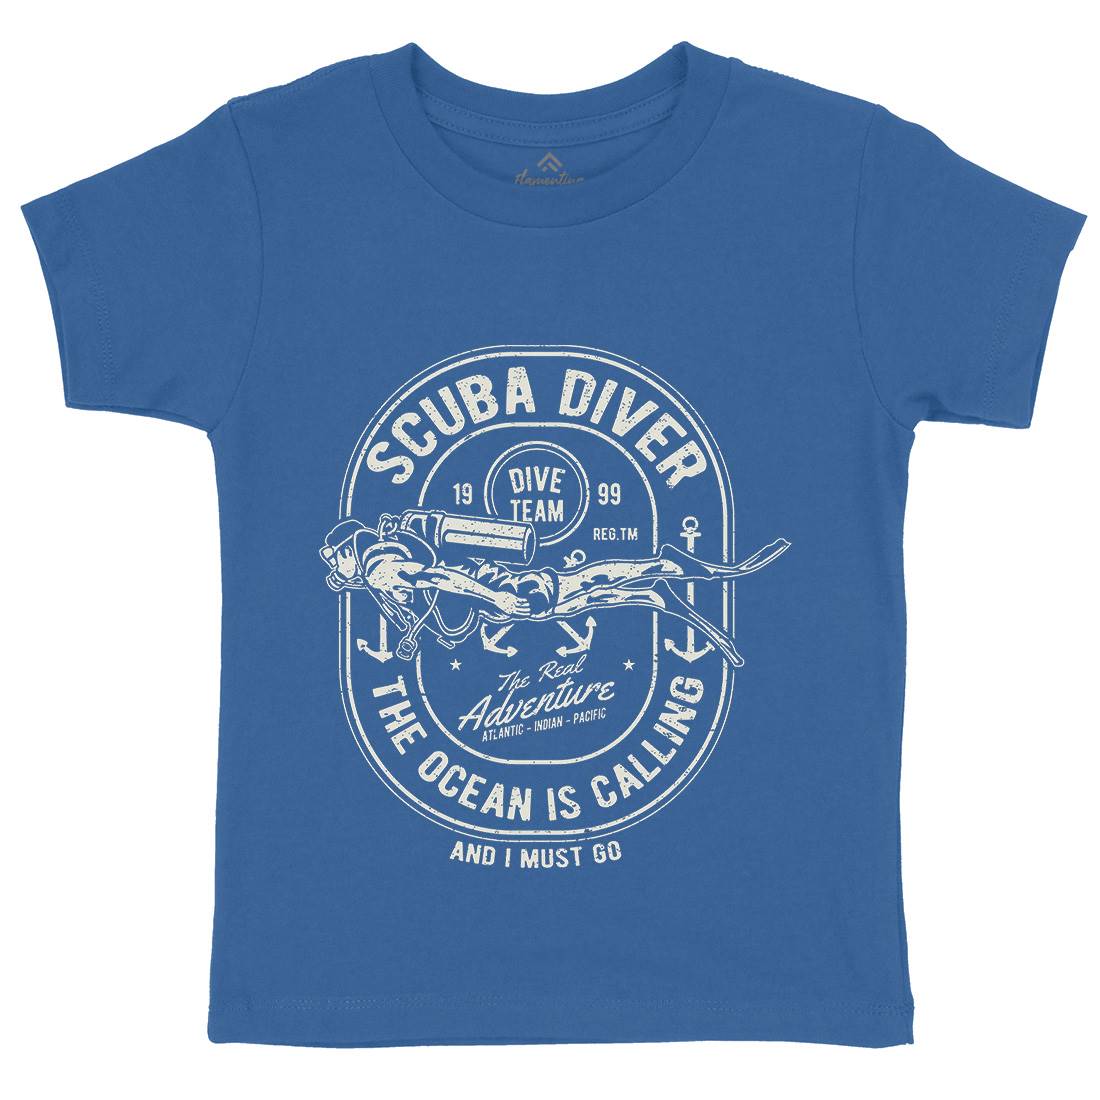 Scuba Diver Kids Crew Neck T-Shirt Navy A138